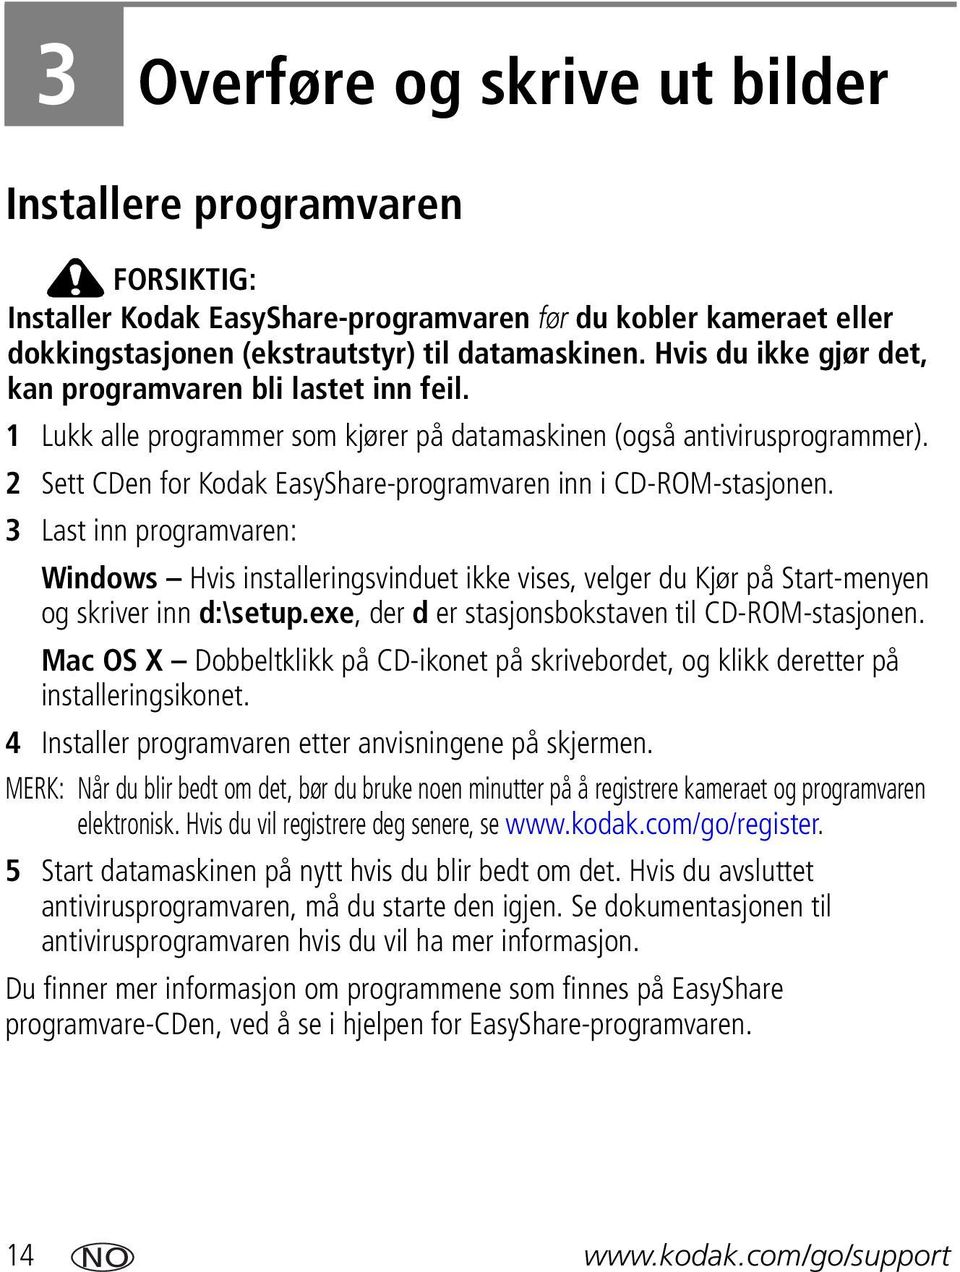 2 Sett CDen for Kodak EasyShare-programvaren inn i CD-ROM-stasjonen. 3 Last inn programvaren: Windows Hvis installeringsvinduet ikke vises, velger du Kjør på Start-menyen og skriver inn d:\setup.